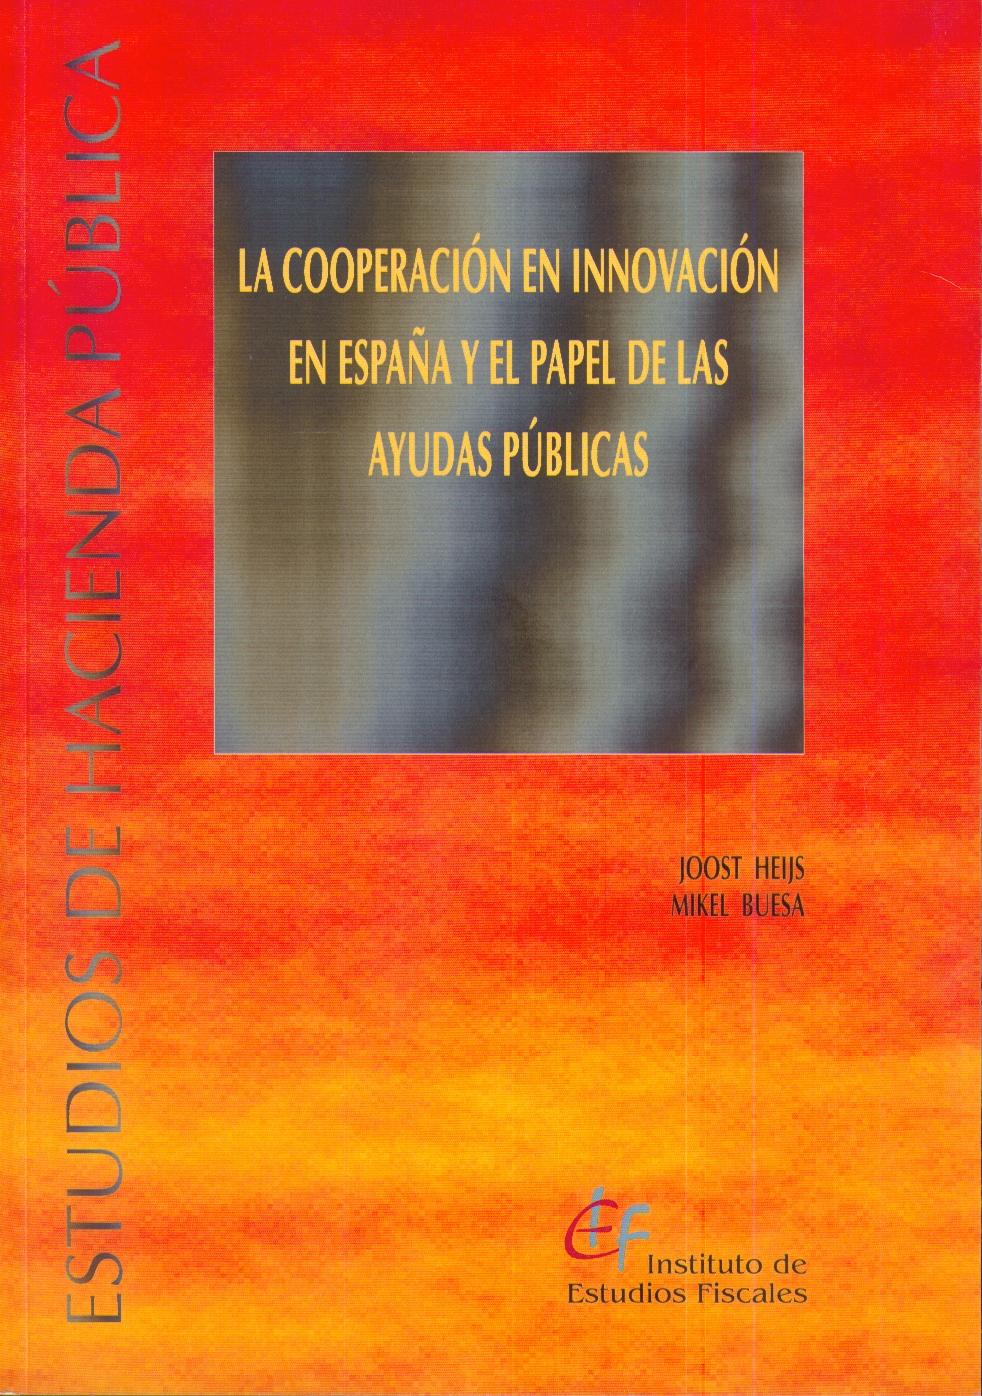 La Cooperación en Innovación en España y el Papel de las Ayudas Públicas.